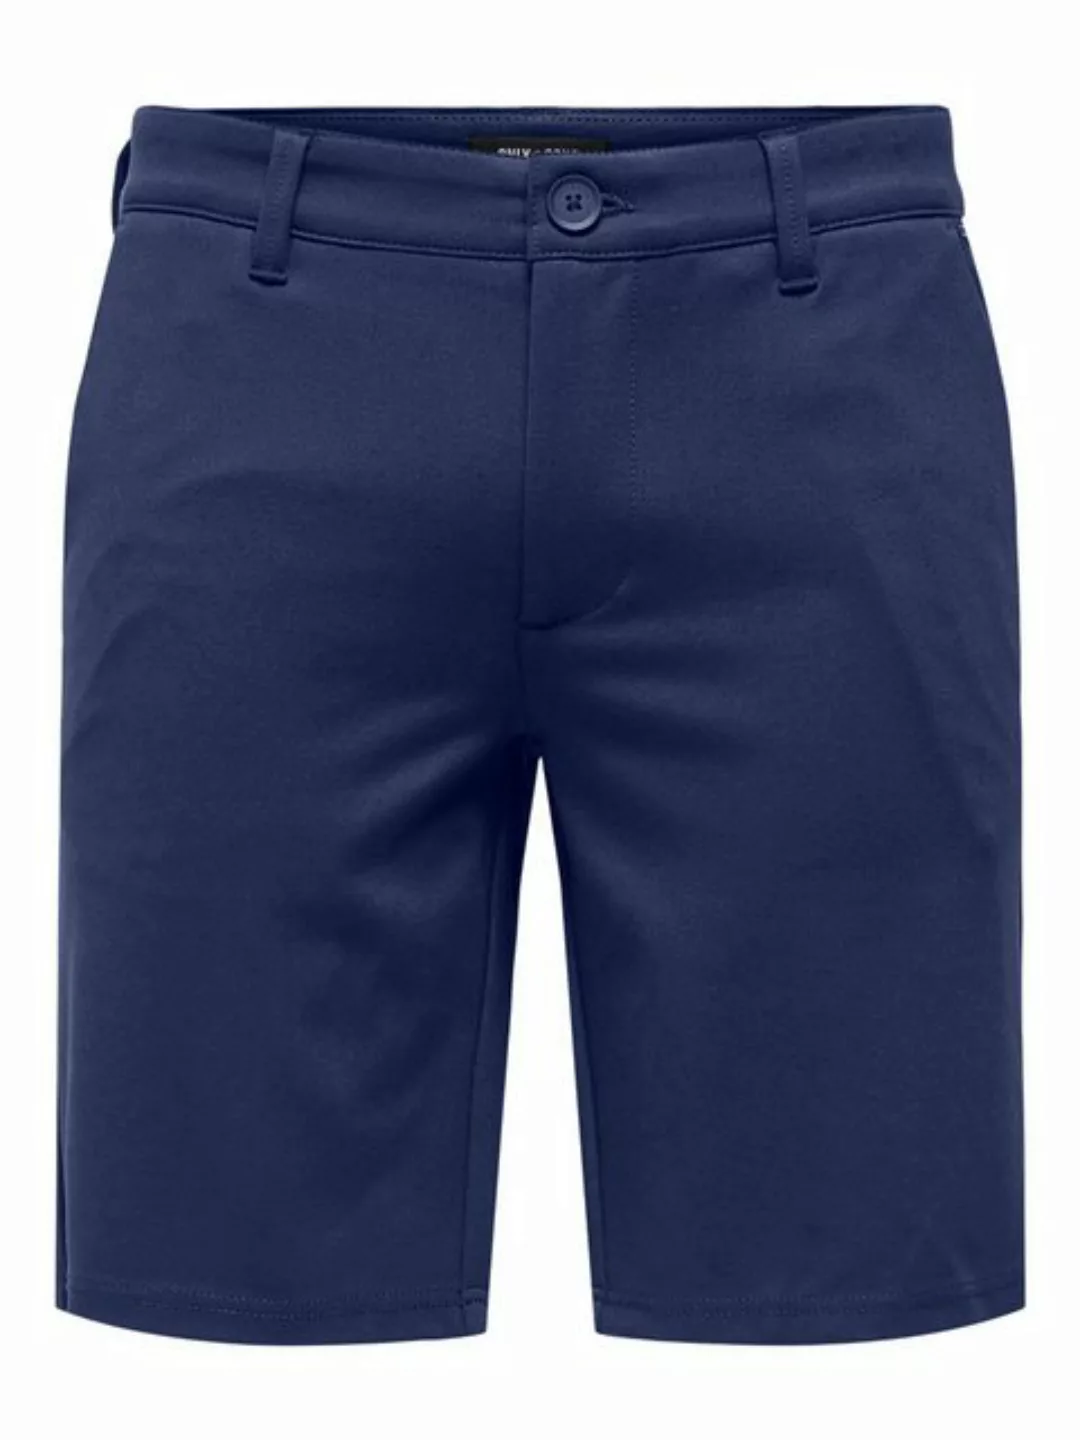 ONLY & SONS Chinoshorts Shorts Bermuda Pants Sommer Hose 7413 in Blau günstig online kaufen